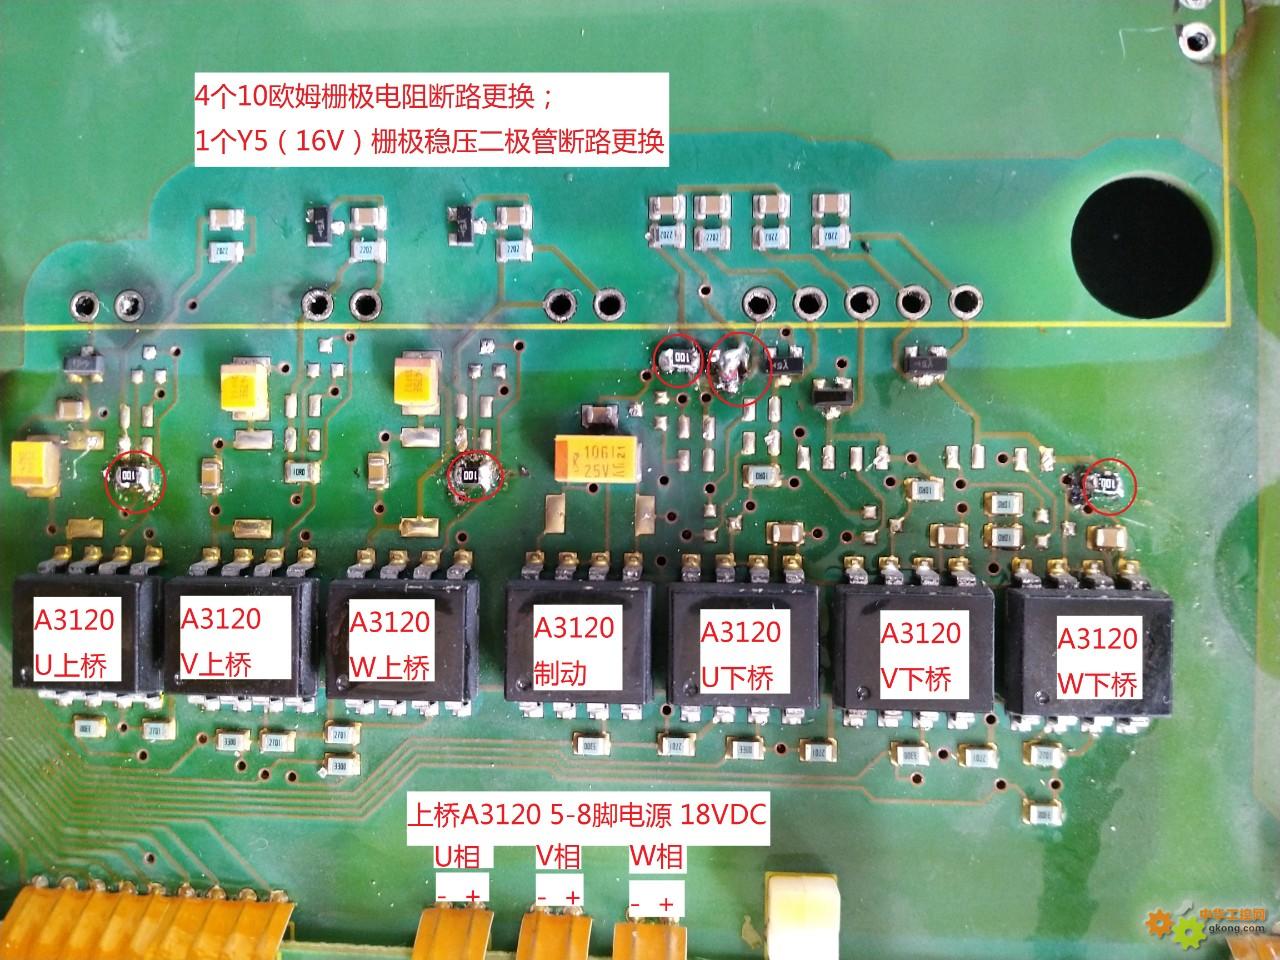 MM440-11KW变频器炸模块故障修复及IGBT脱板报警屏蔽一例